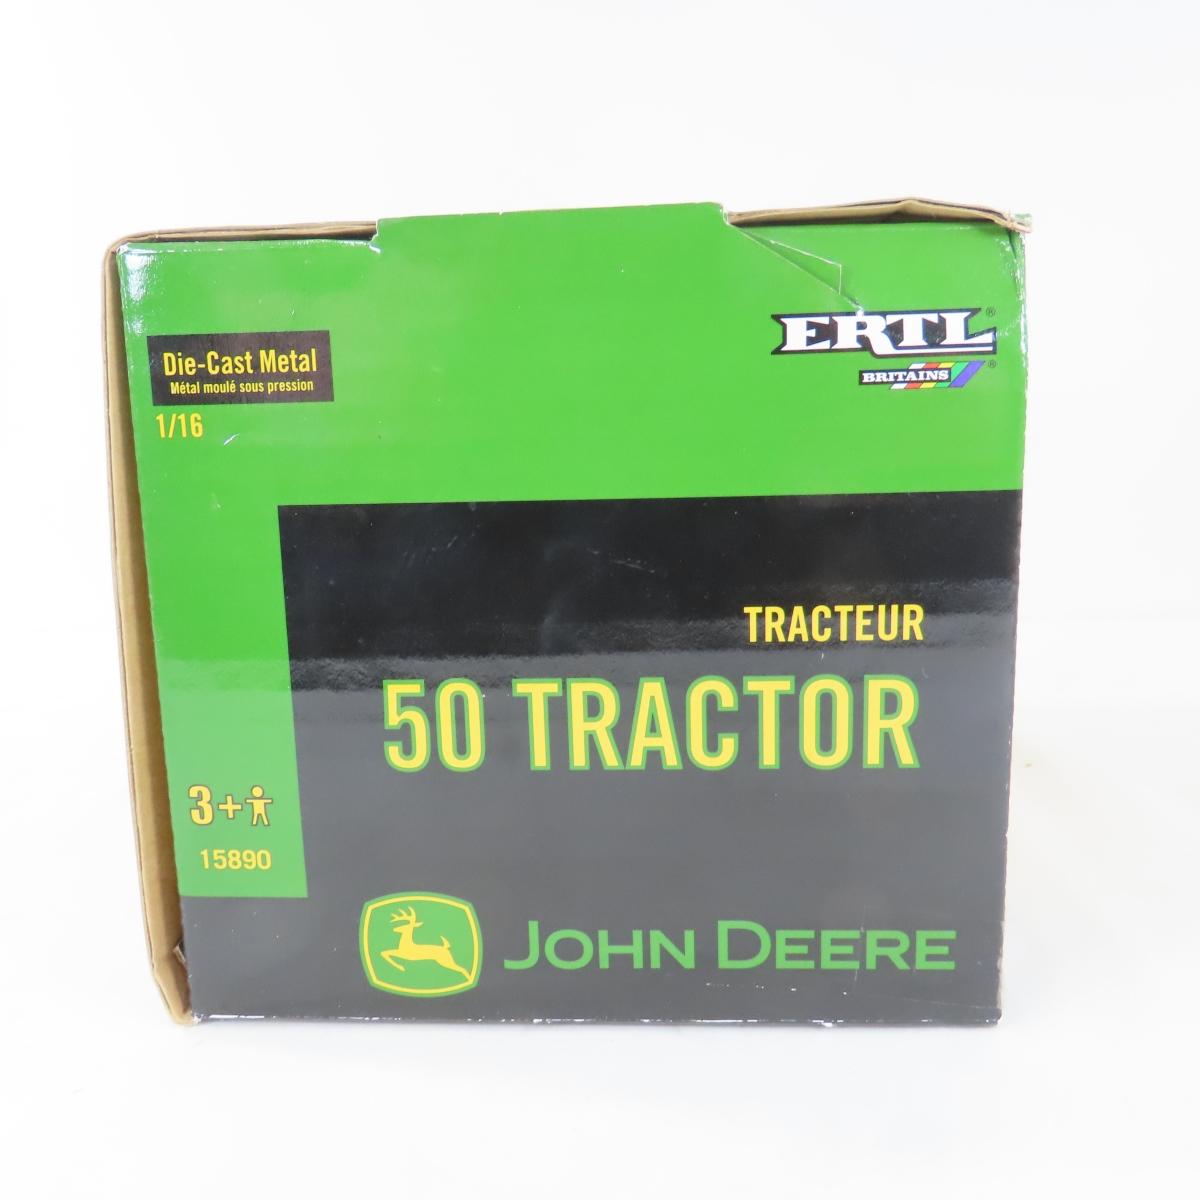 3 ERTLs John Deere Tractors 1:16